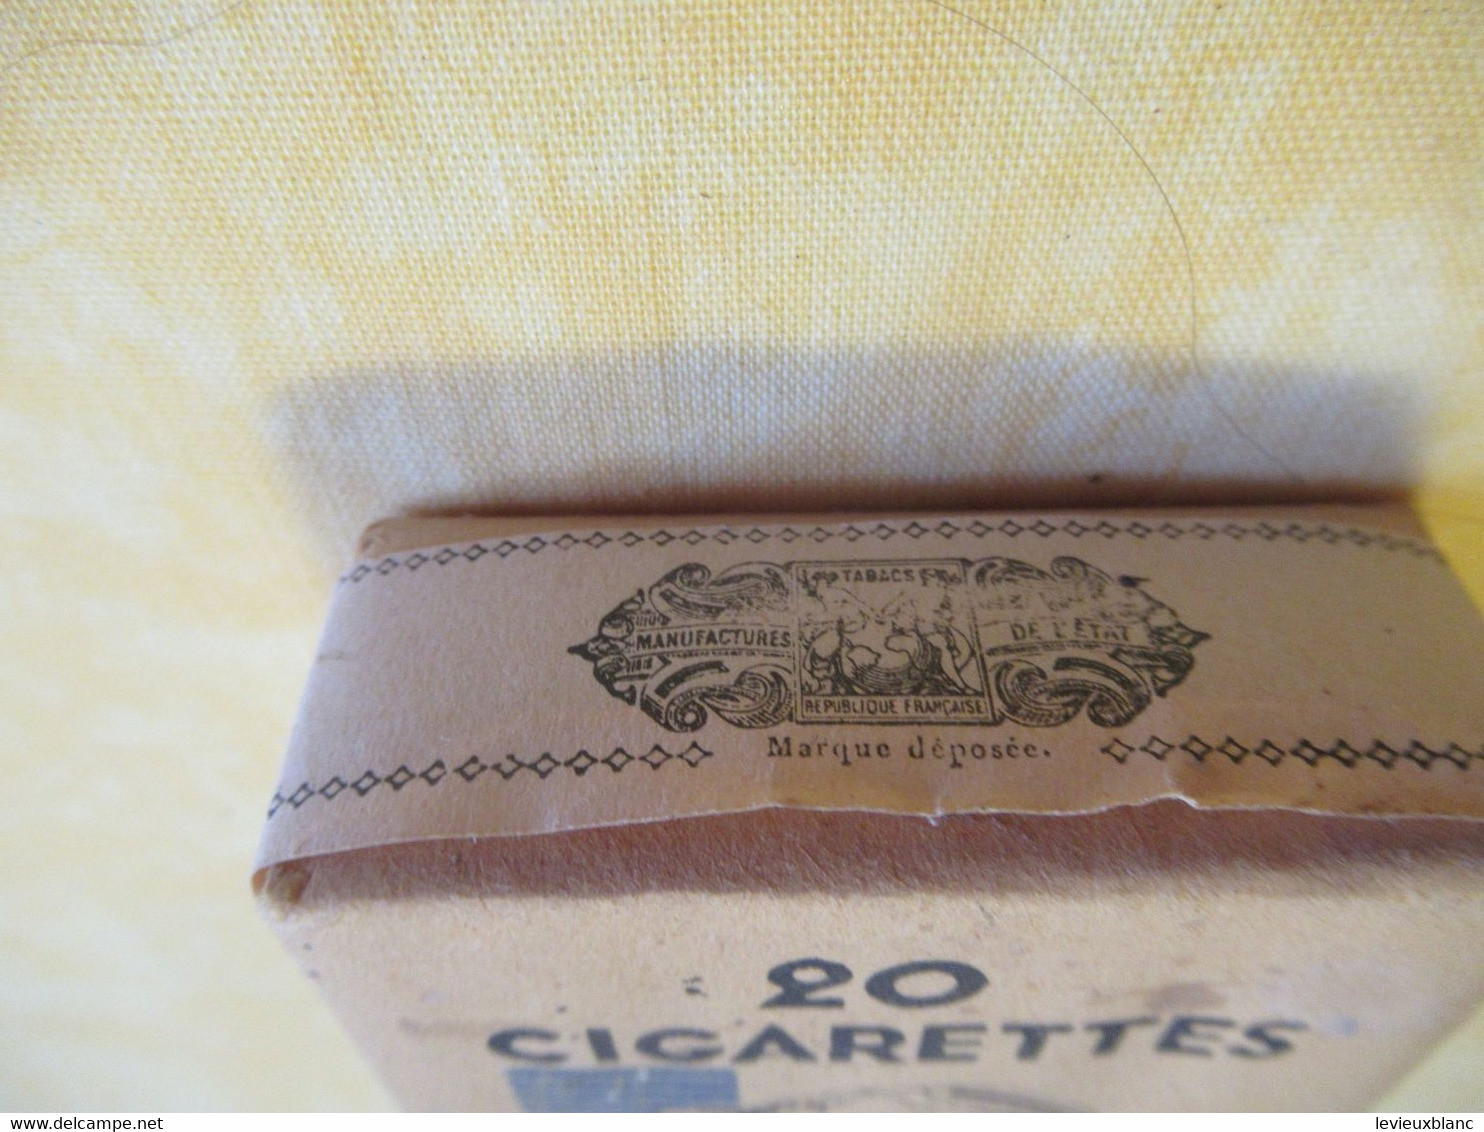 20 Cigarettes De TROUPE/ Paquet Ancien Intact/Régie Française Des Tabacs/Manufactures De Tabac/1940       CIG72 - Other & Unclassified